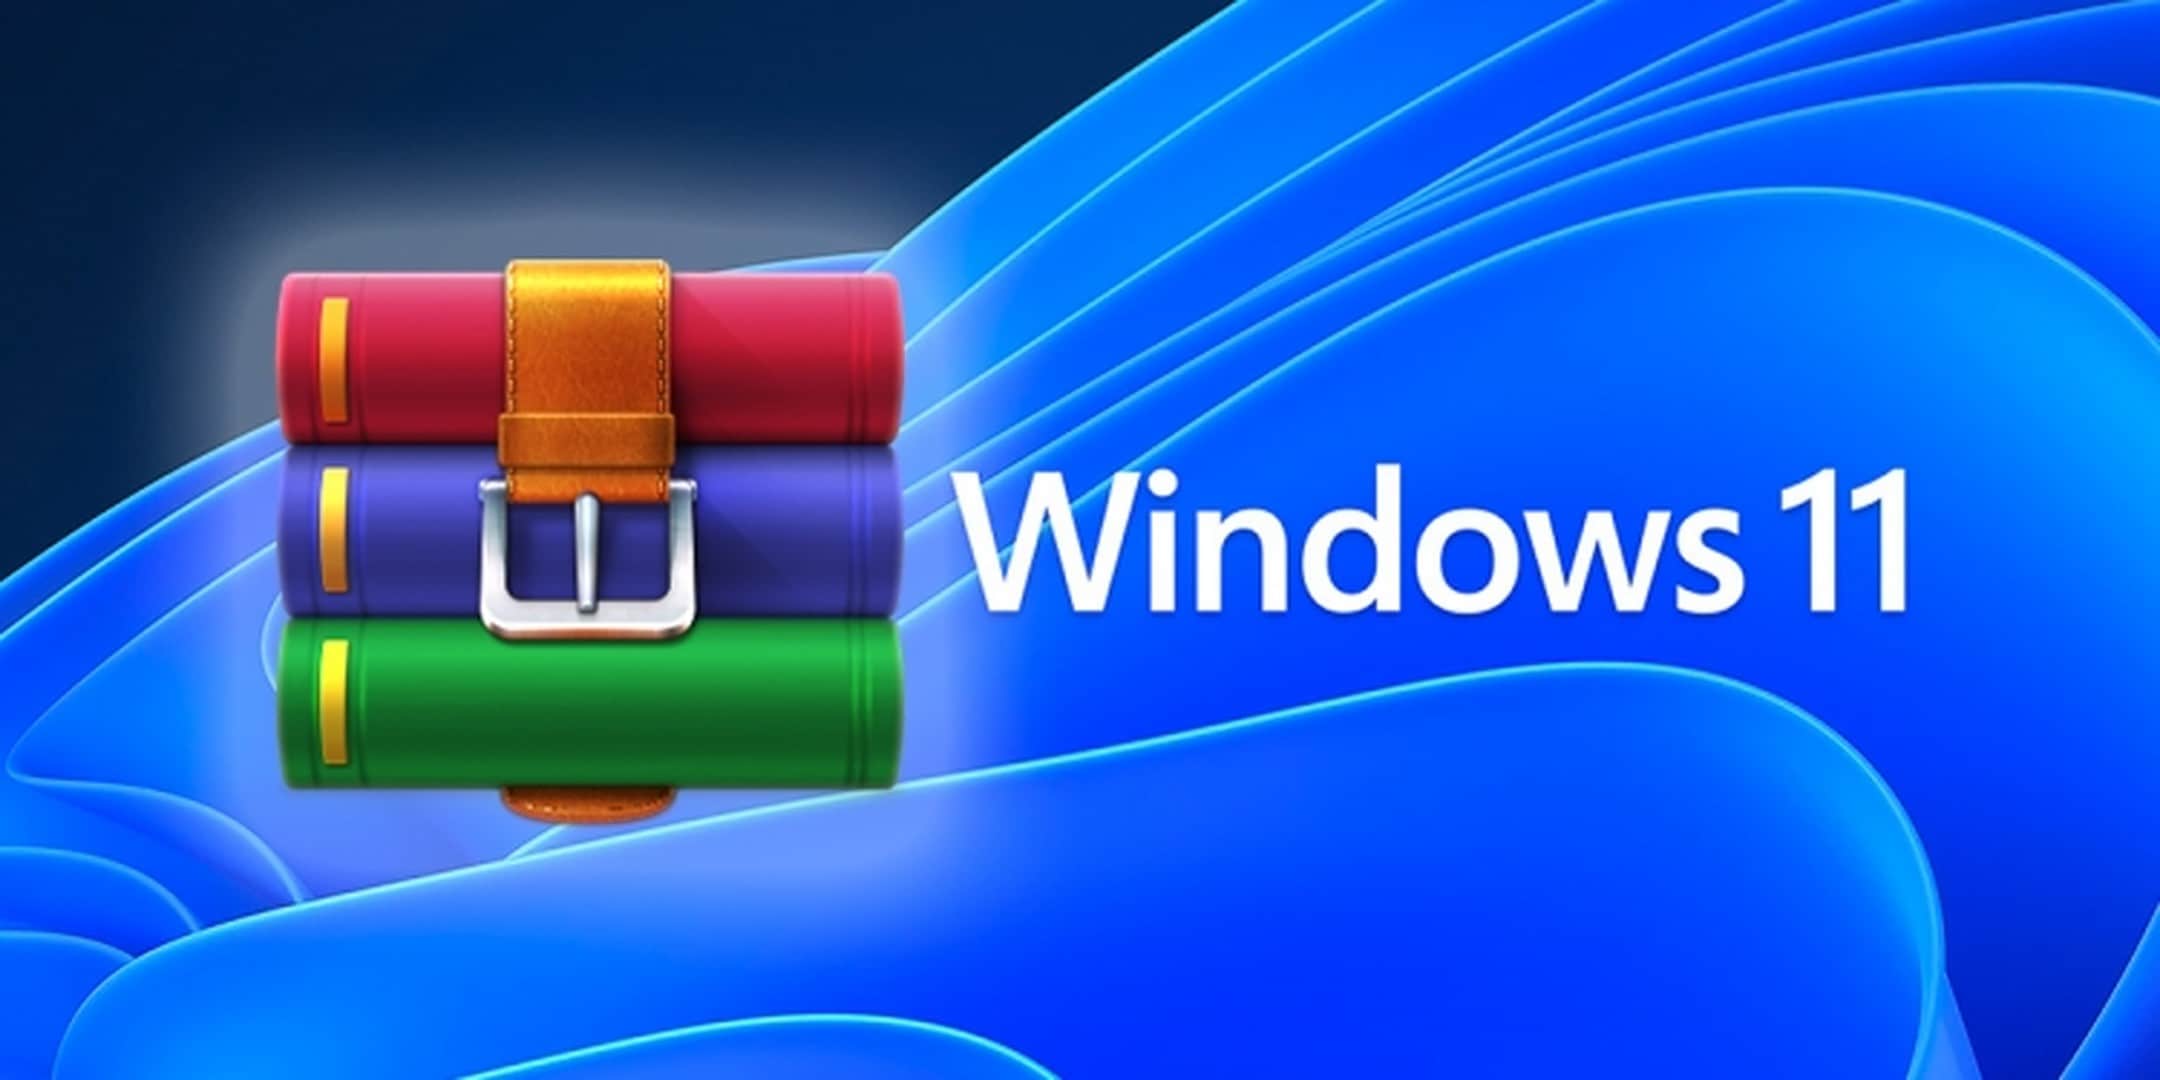 Windows 11 supporterà file RAR e ZIP: cosa ne pensa WinRAR?